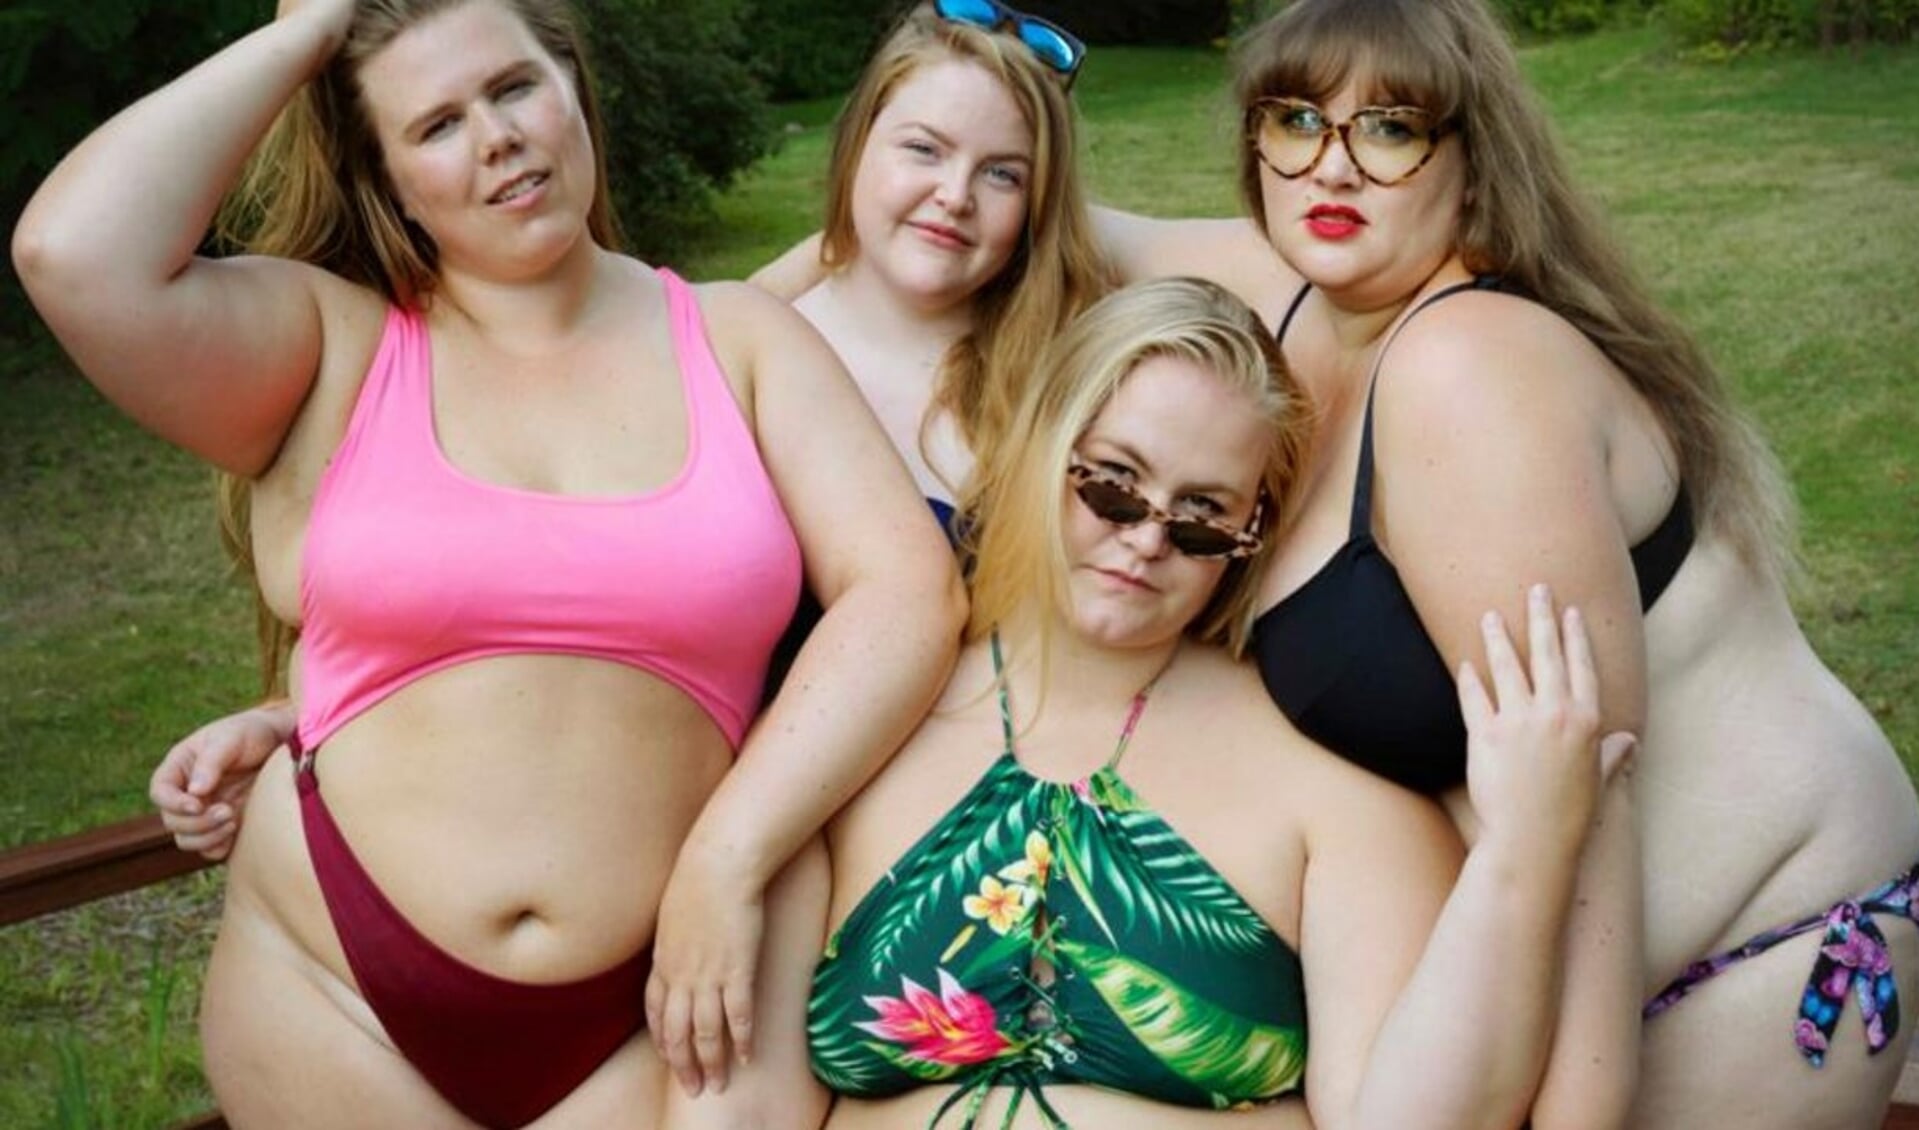 Disse fire kvinder er udstyret med solide dansehåndtag - og de har det godt med deres runde former. Det fortæller de om i filmen »Fat Front«.